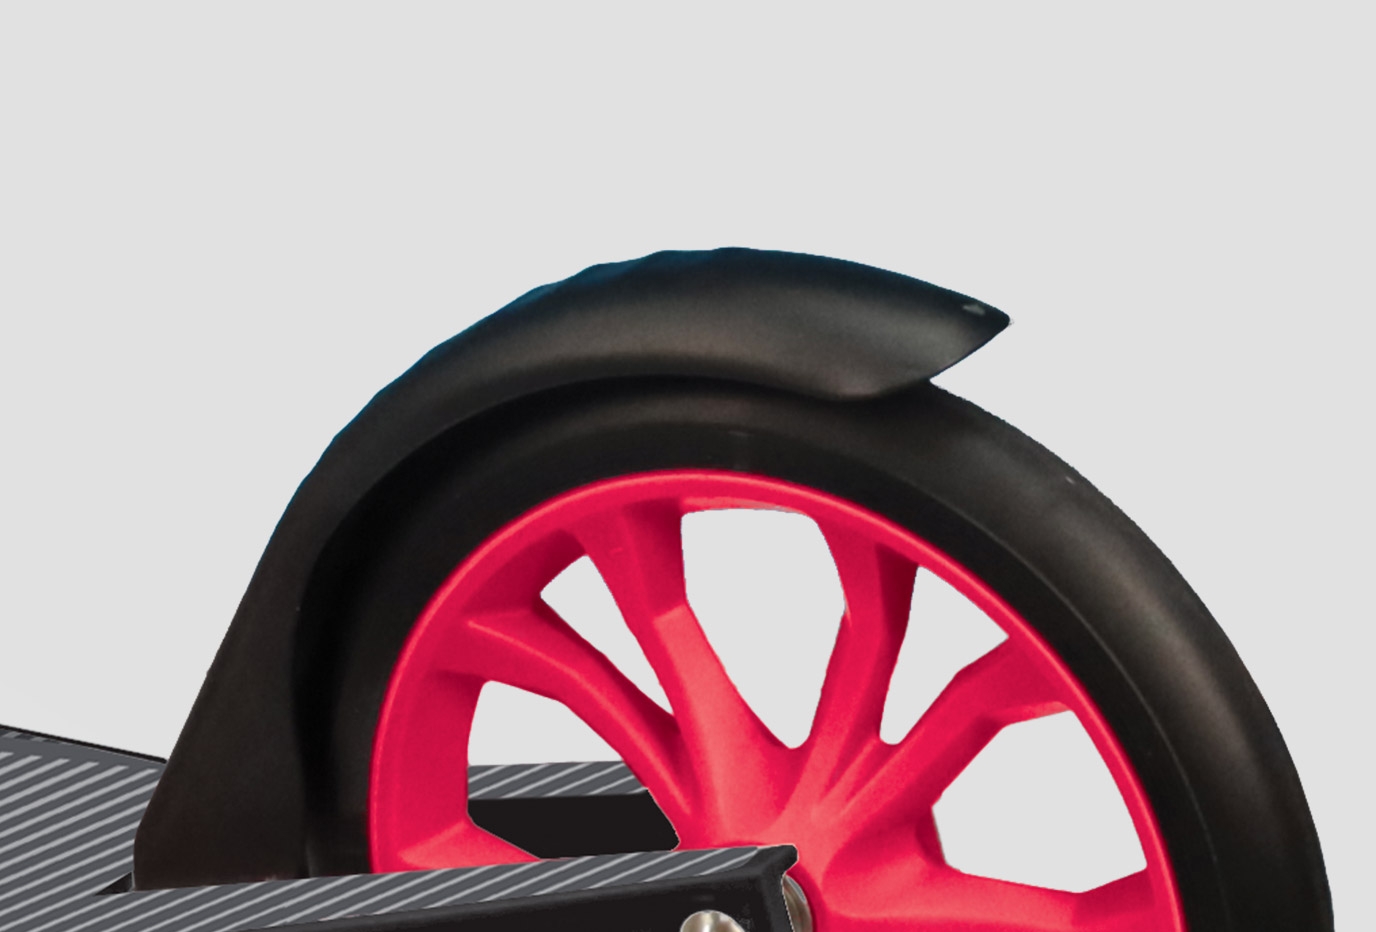 Patinete de ruedas grandes, seguro y duradero con una robusta plataforma de aluminio y freno trasero. 